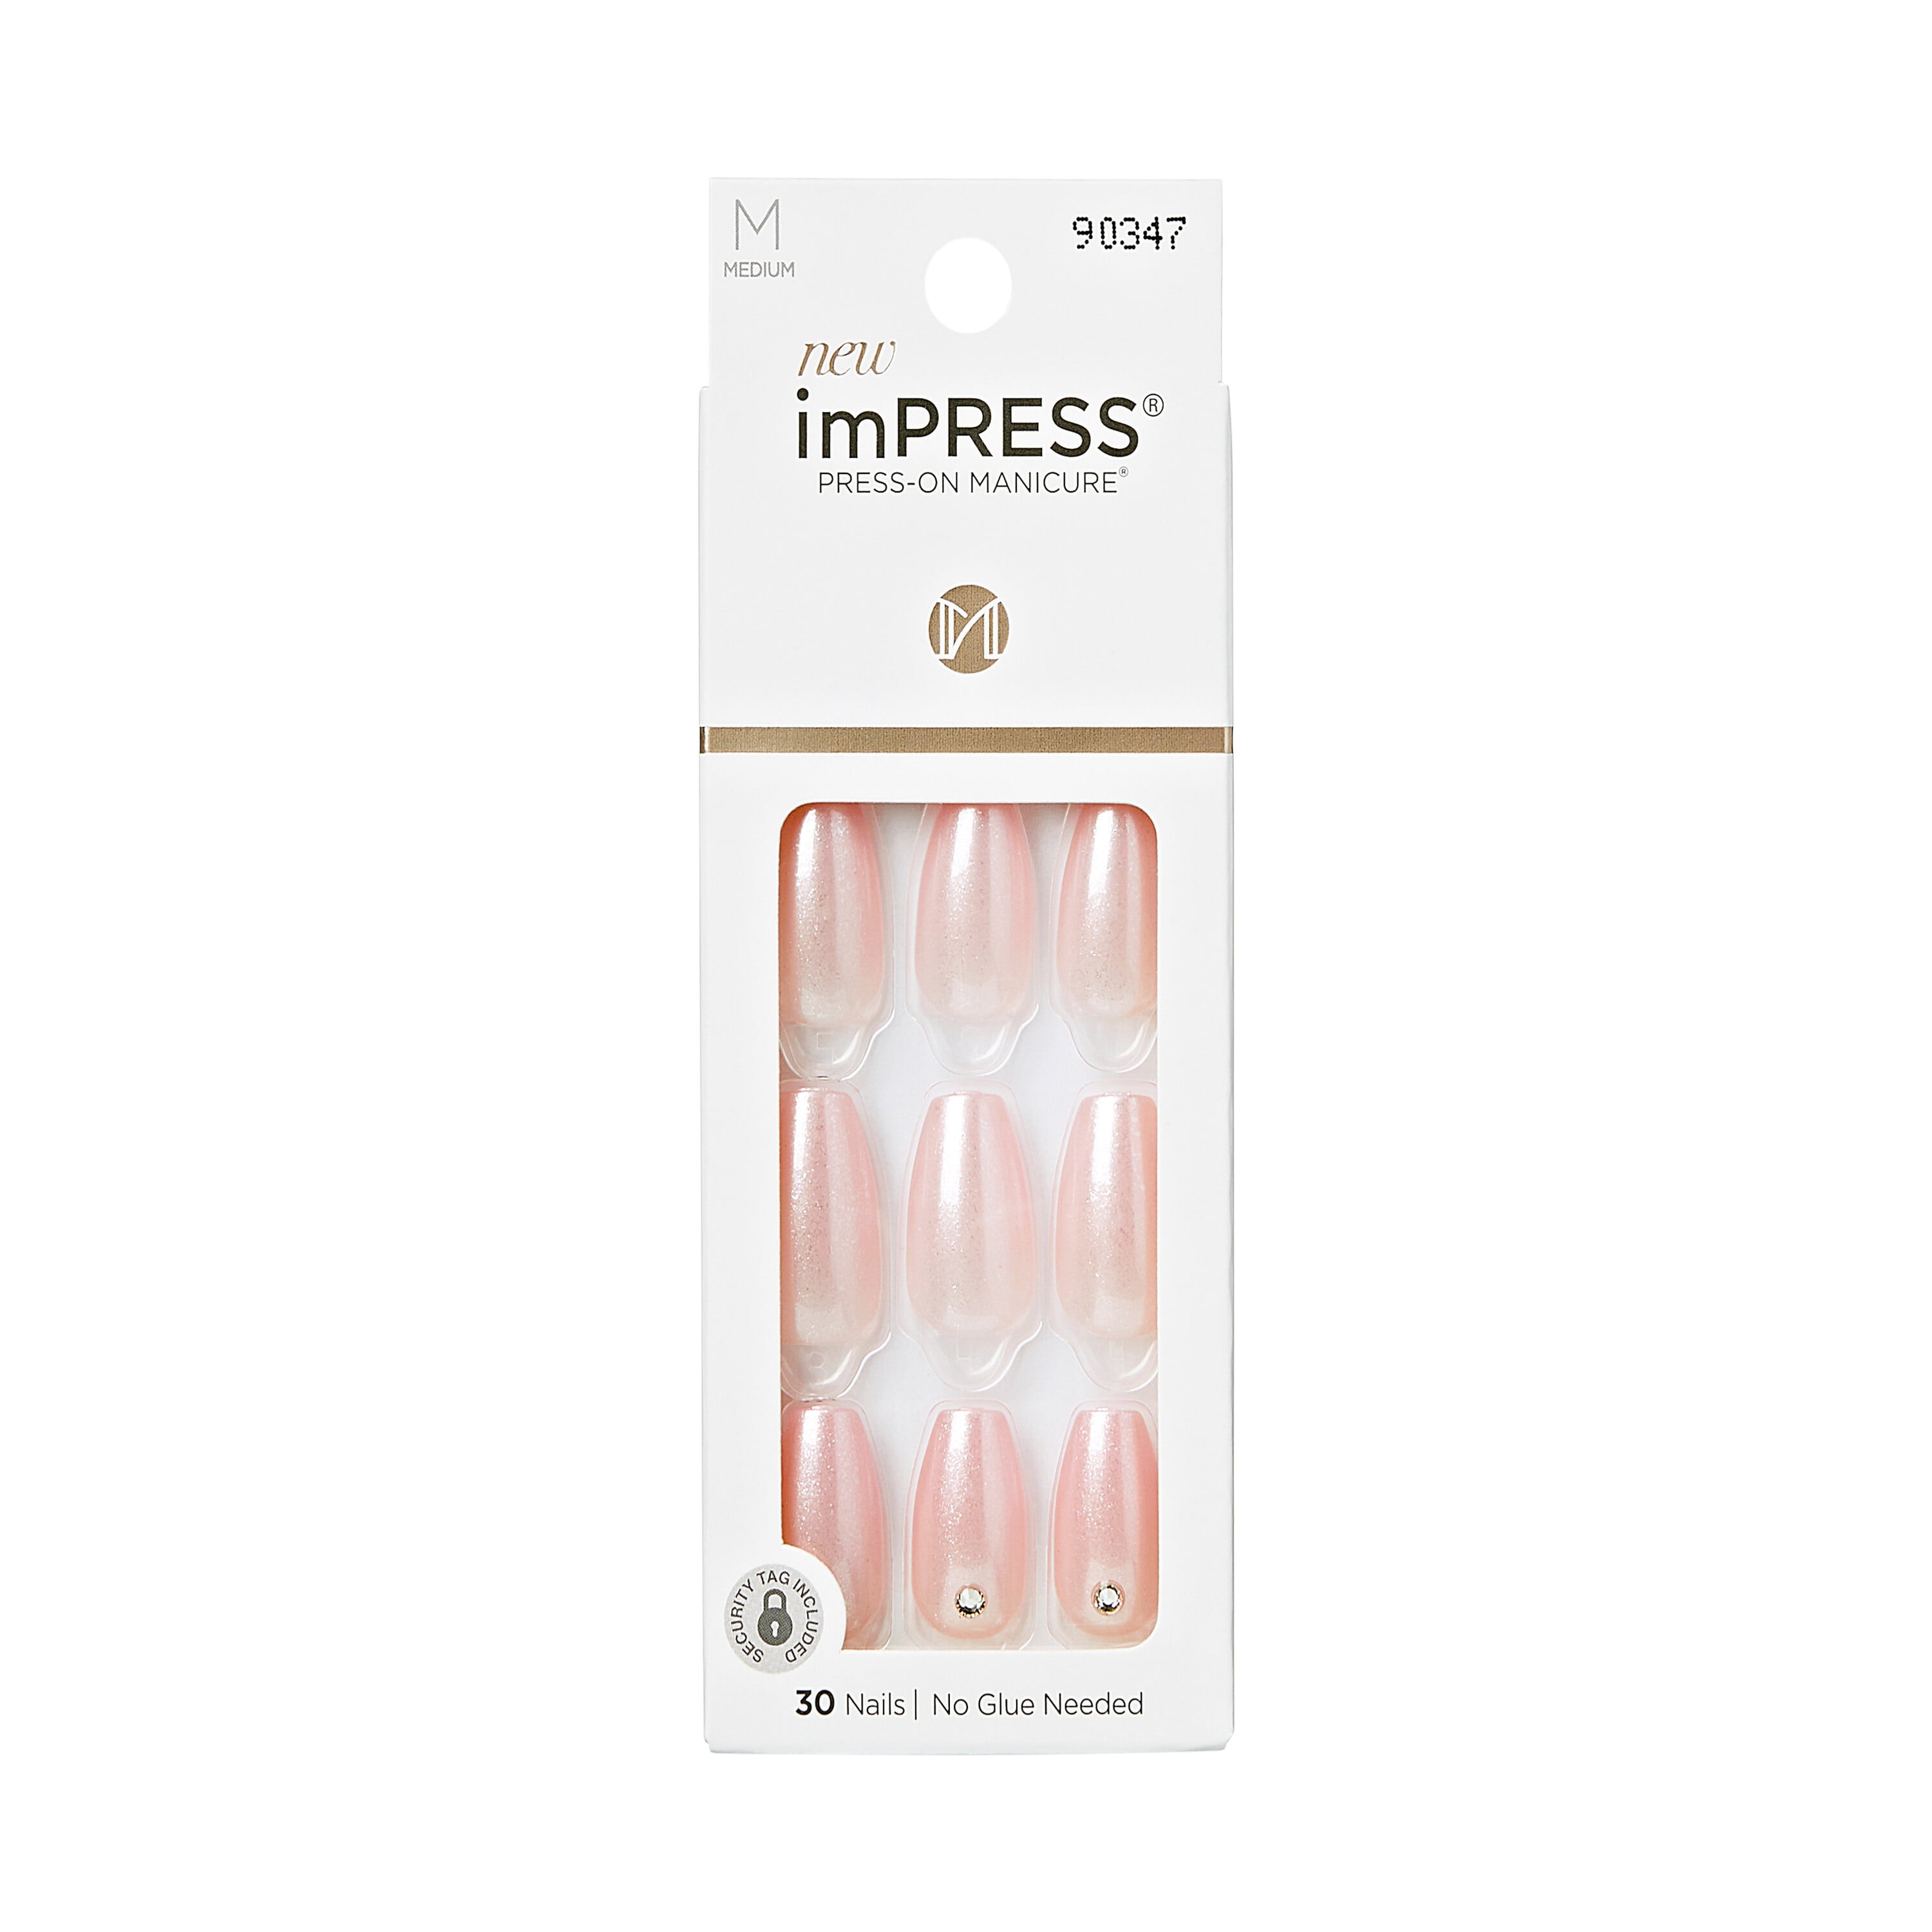 KISS imPRESS Medium Coffin Gel Press-On Nails, Glossy Light Pink, 30 ...